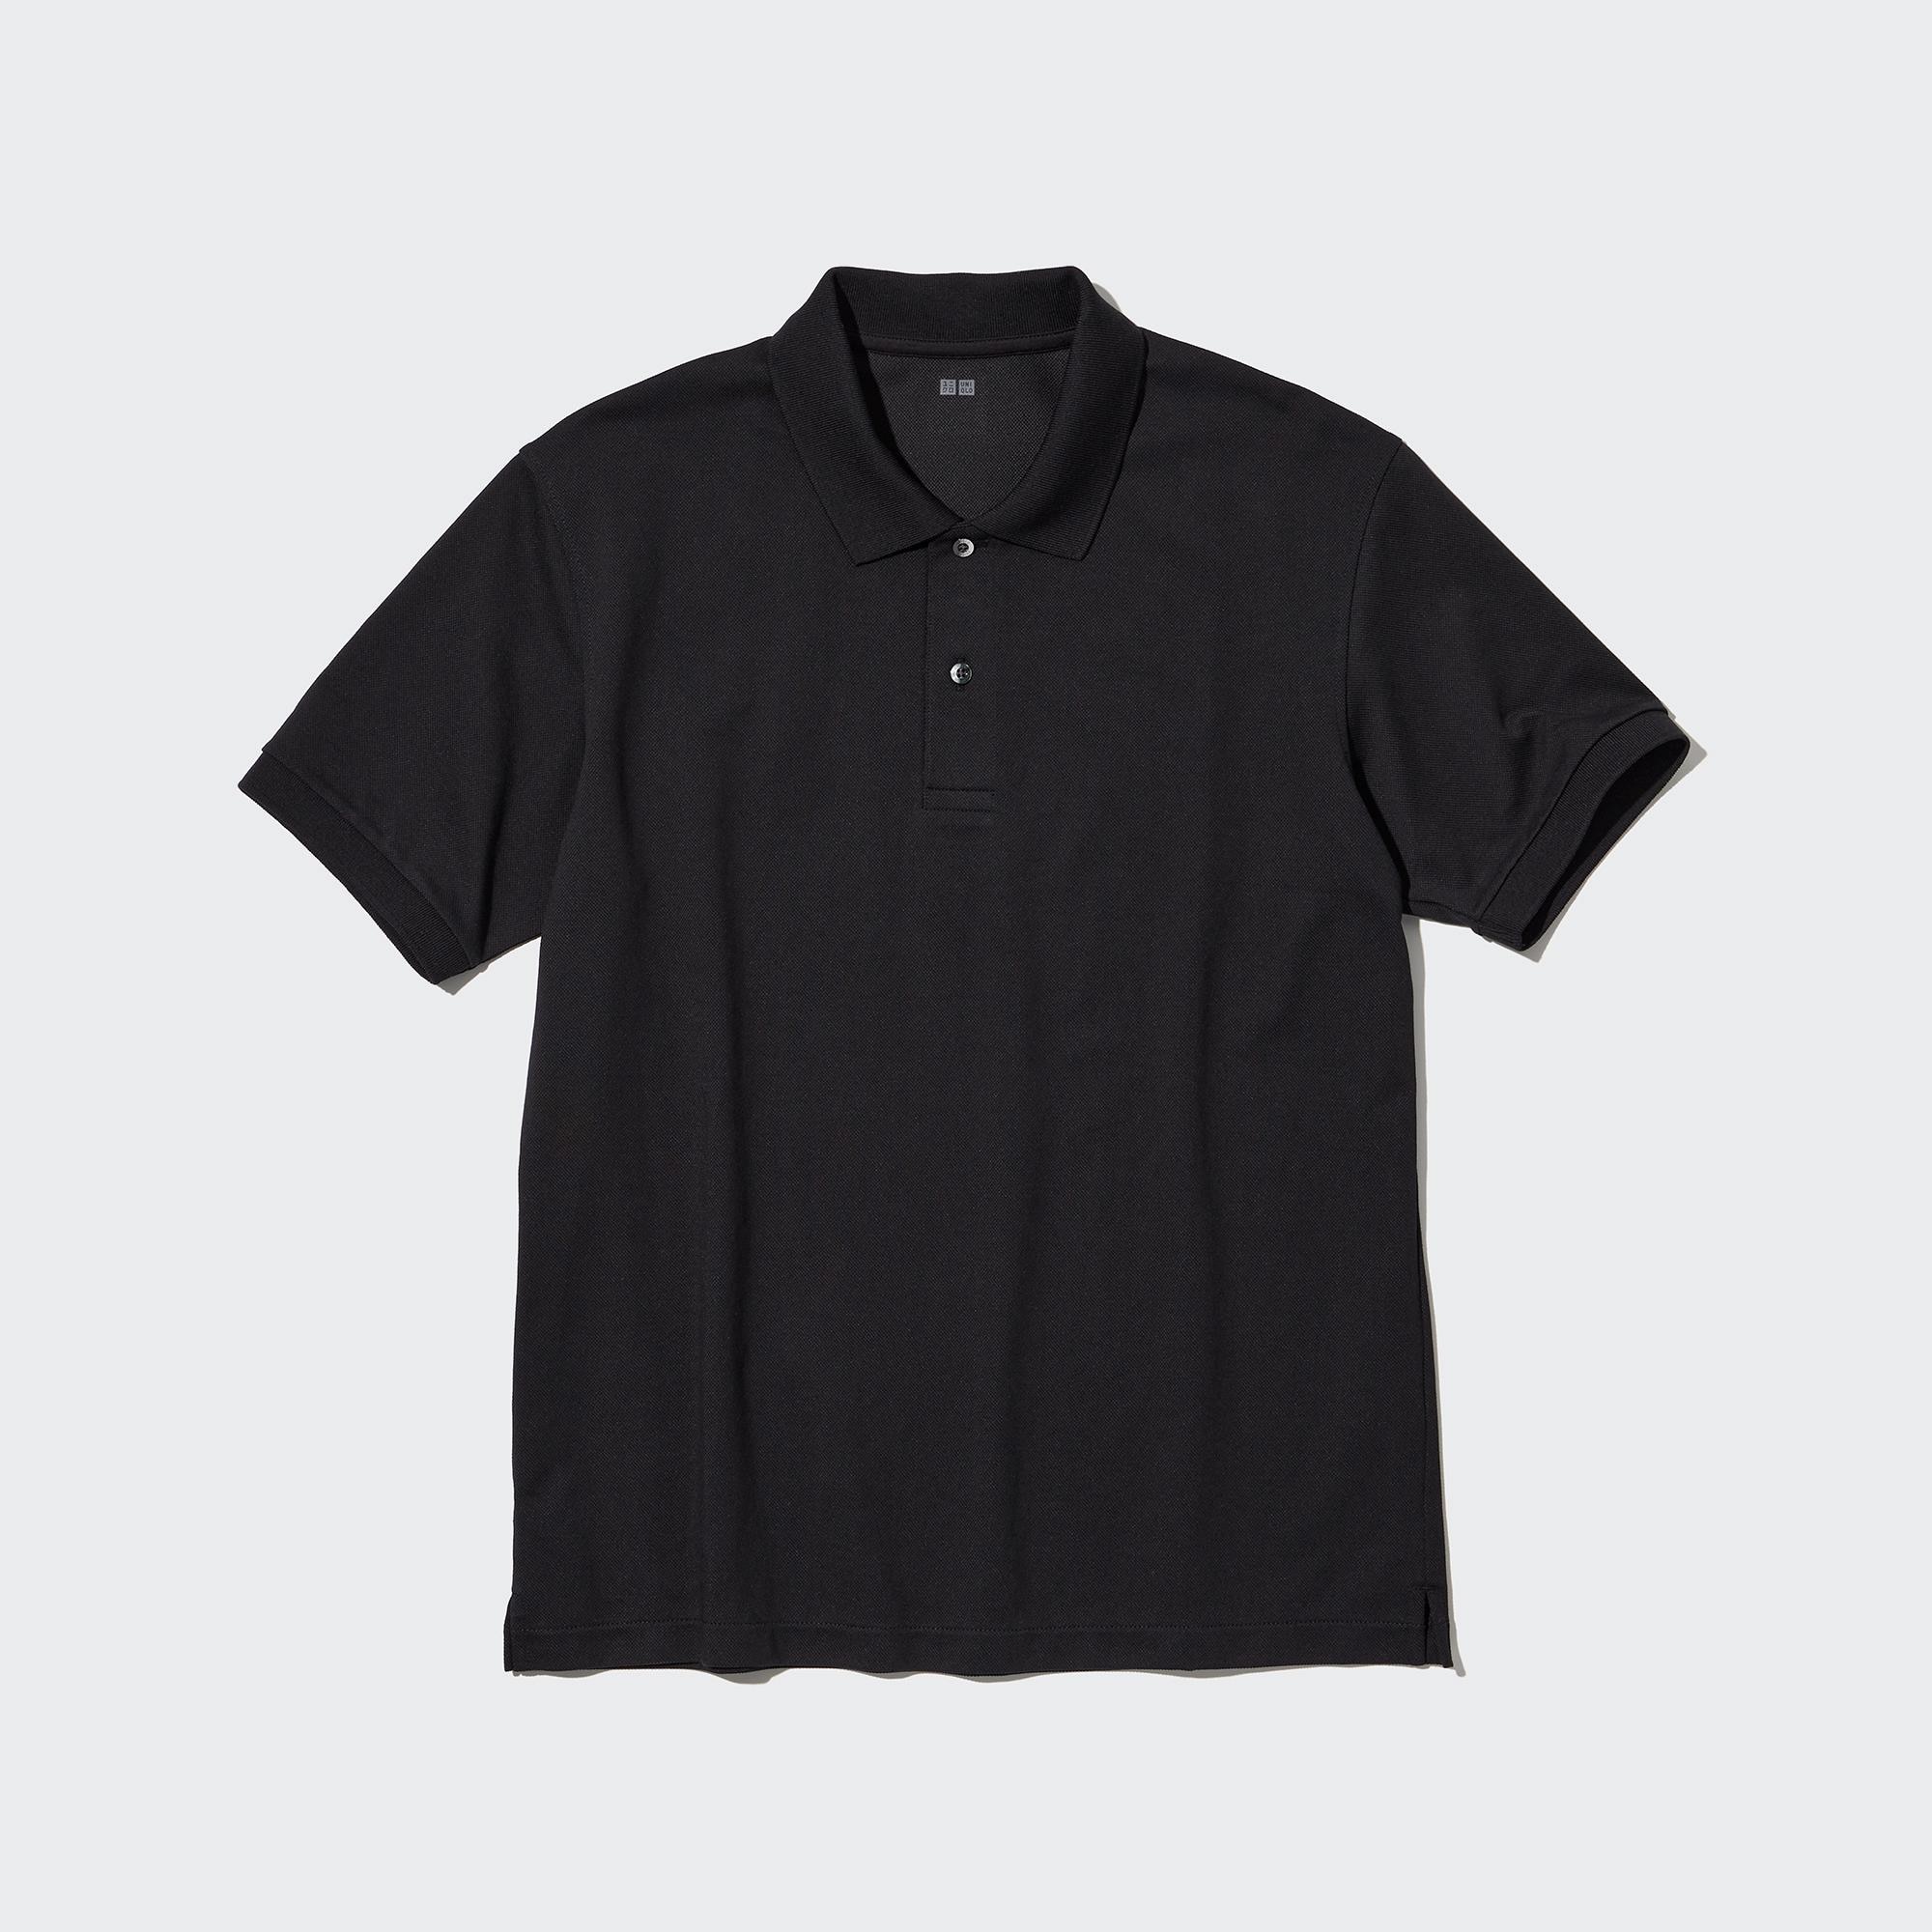 ユニクロ ポロシャツ 黒 半袖 Lサイズ - トップス